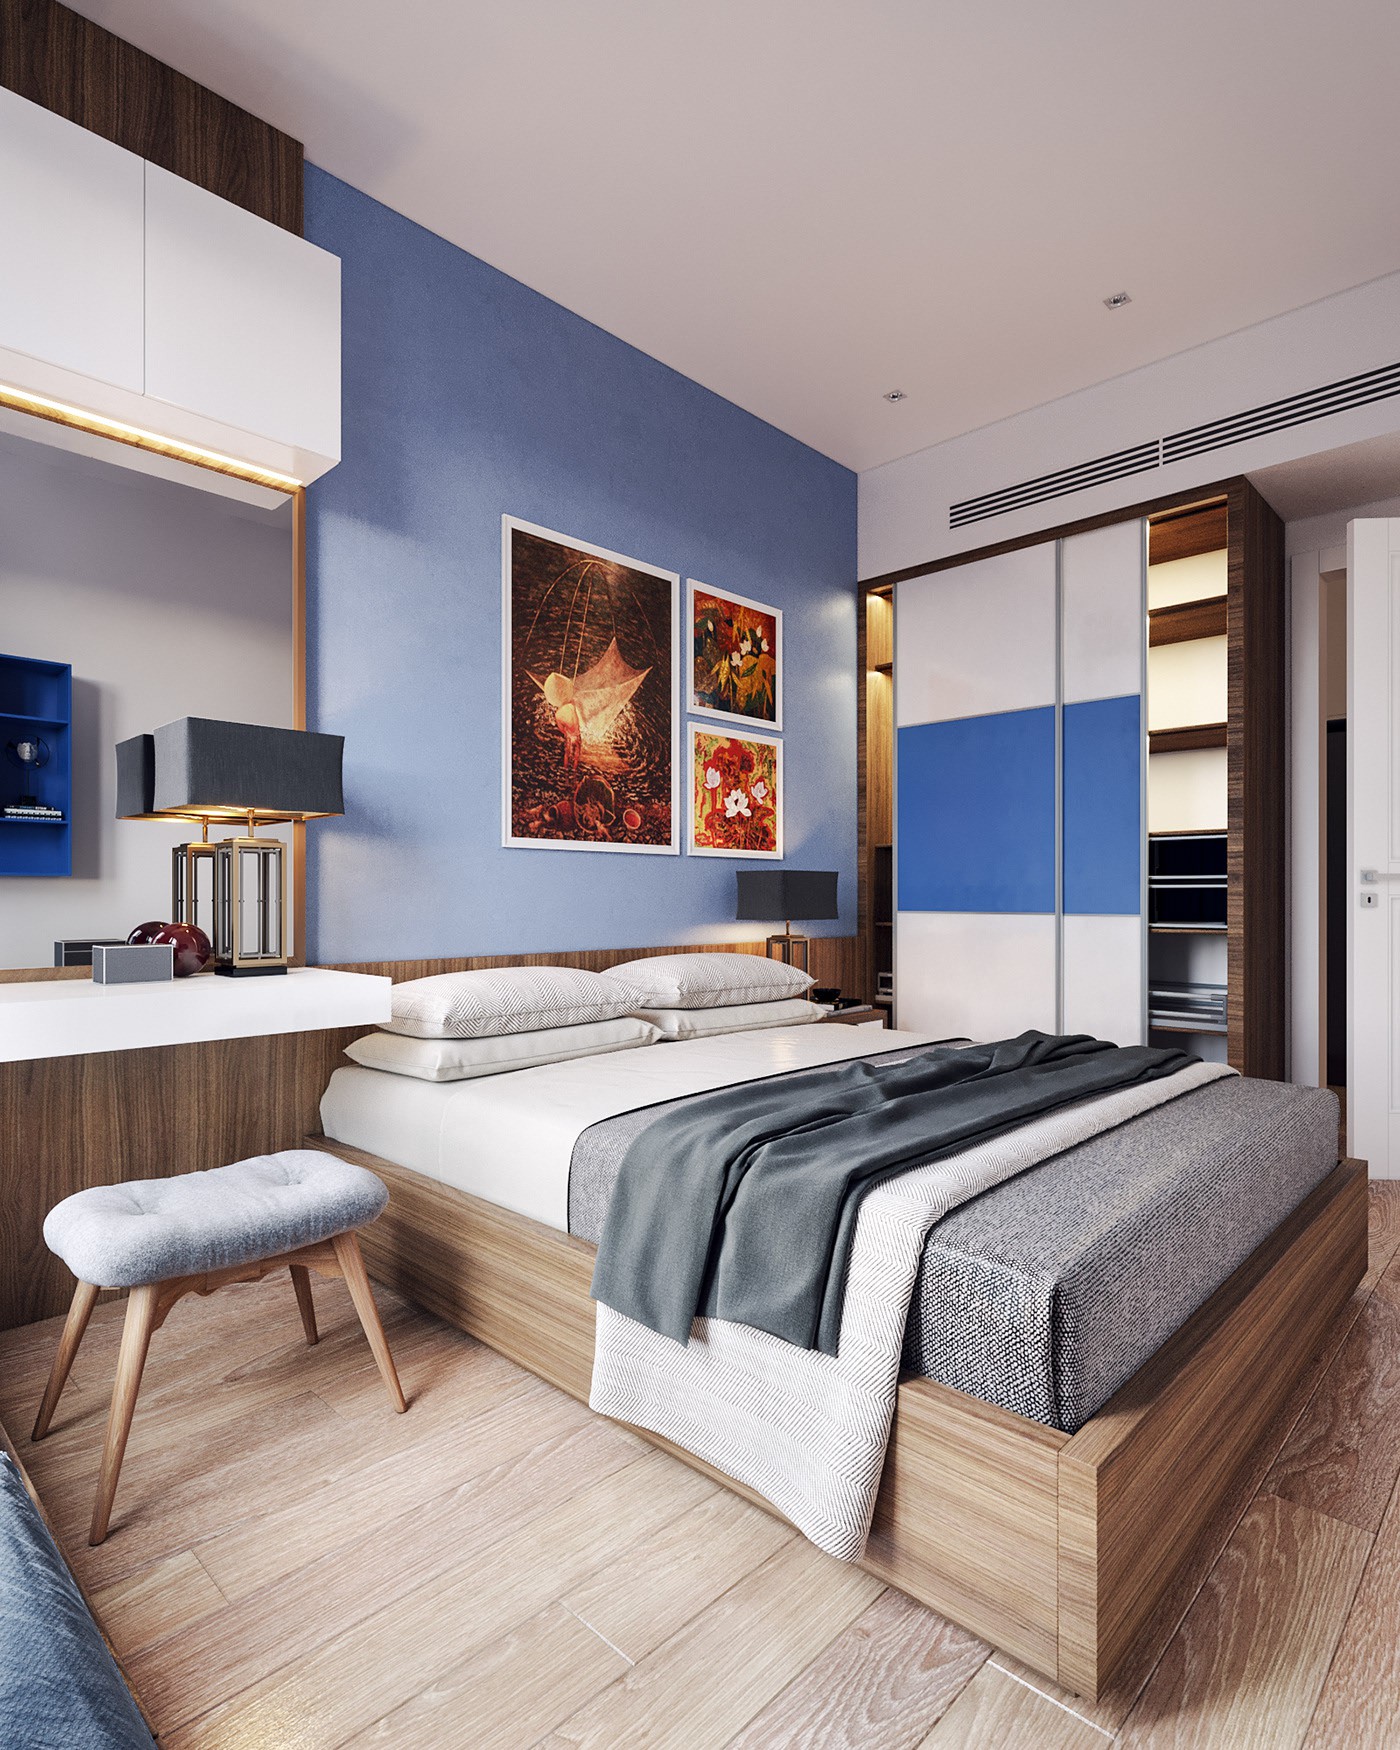 Hình ảnh phòng ngủ trong căn hộ 82m2 với tông xanh dương chủ đạo, trang trang trí đầu giường, bàn trang điểm, tủ quần áo